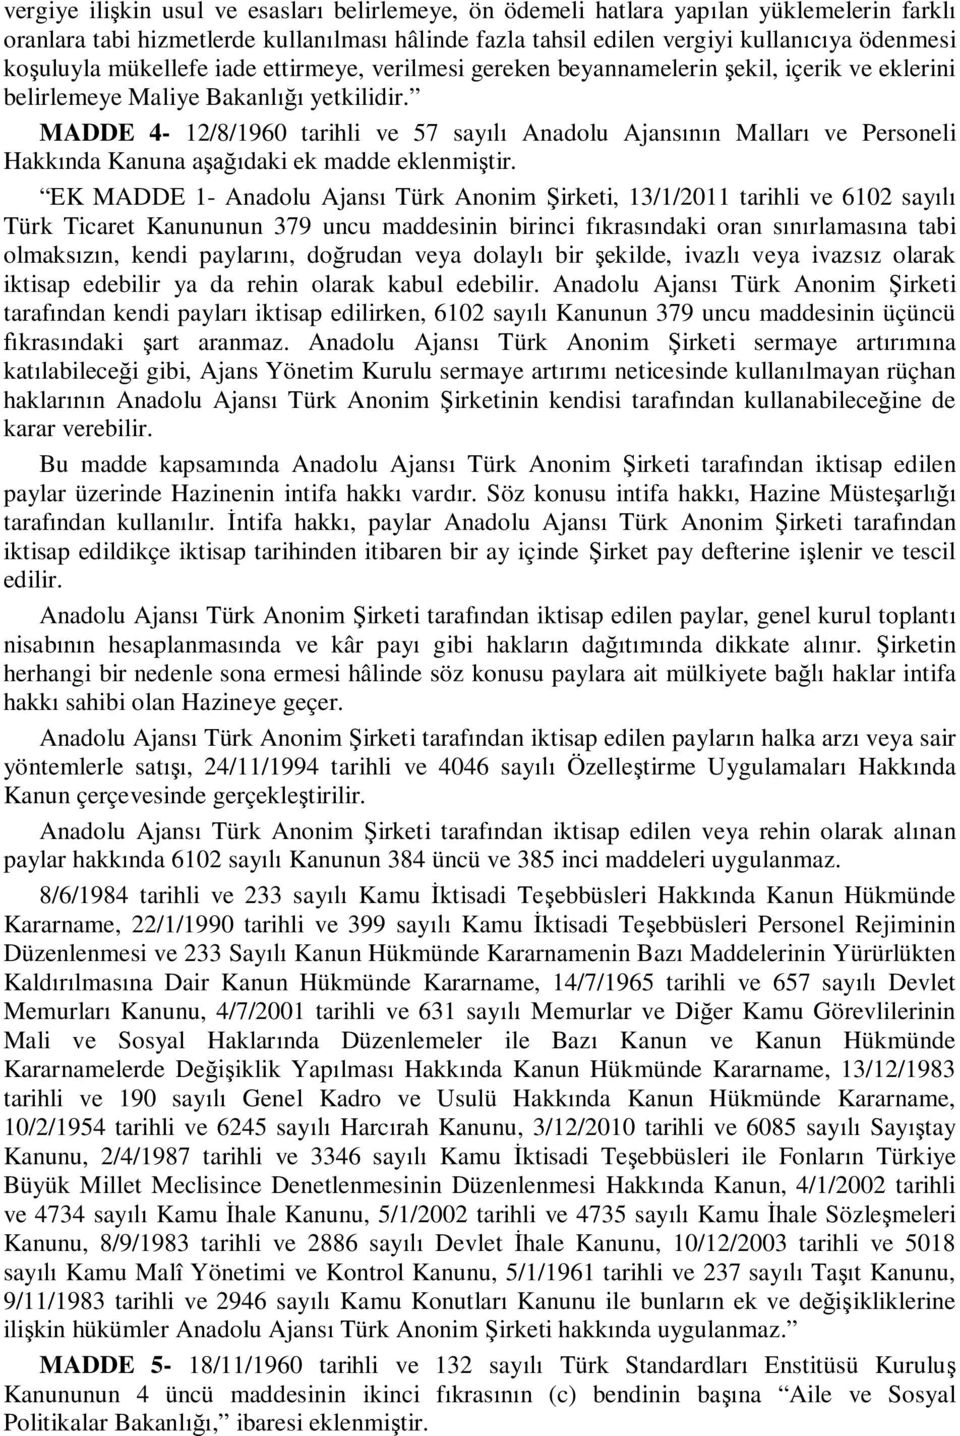 MADDE 4-12/8/1960 tarihli ve 57 sayılı Anadolu Ajansının Malları ve Personeli Hakkında Kanuna aşağıdaki ek madde eklenmiştir.